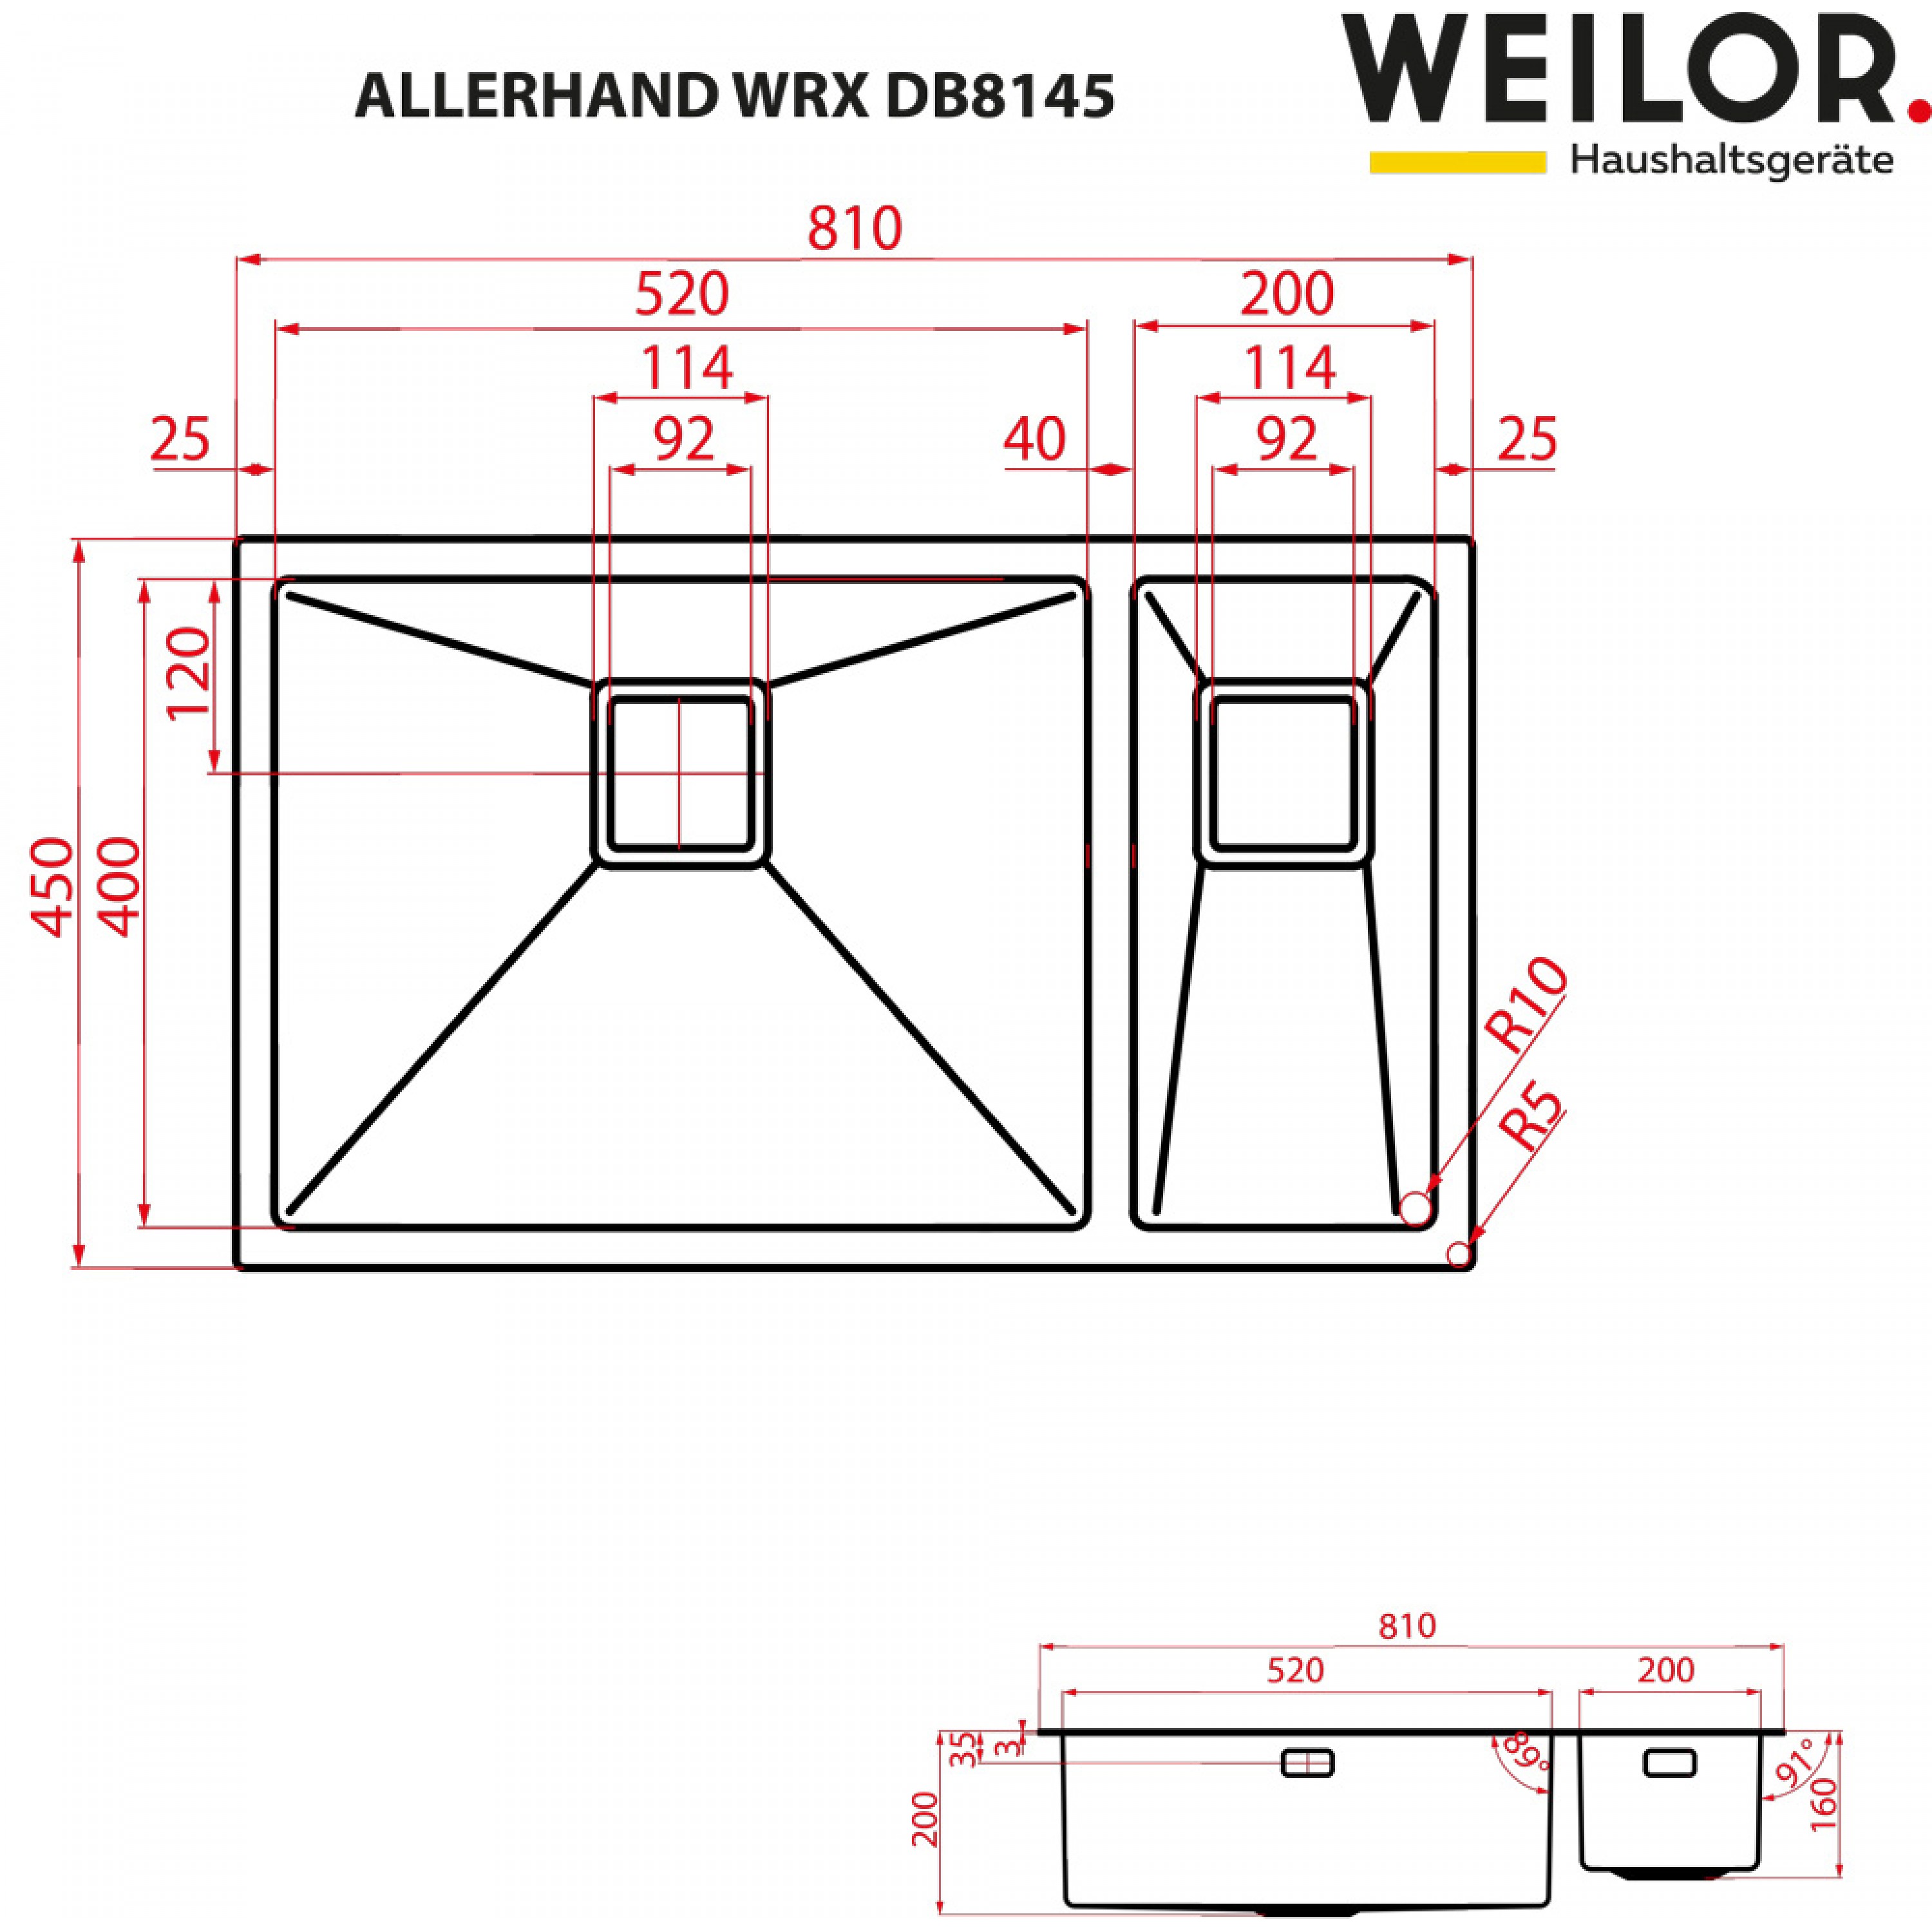 Weilor ALLERHAND WRX DB8145 Габаритные размеры